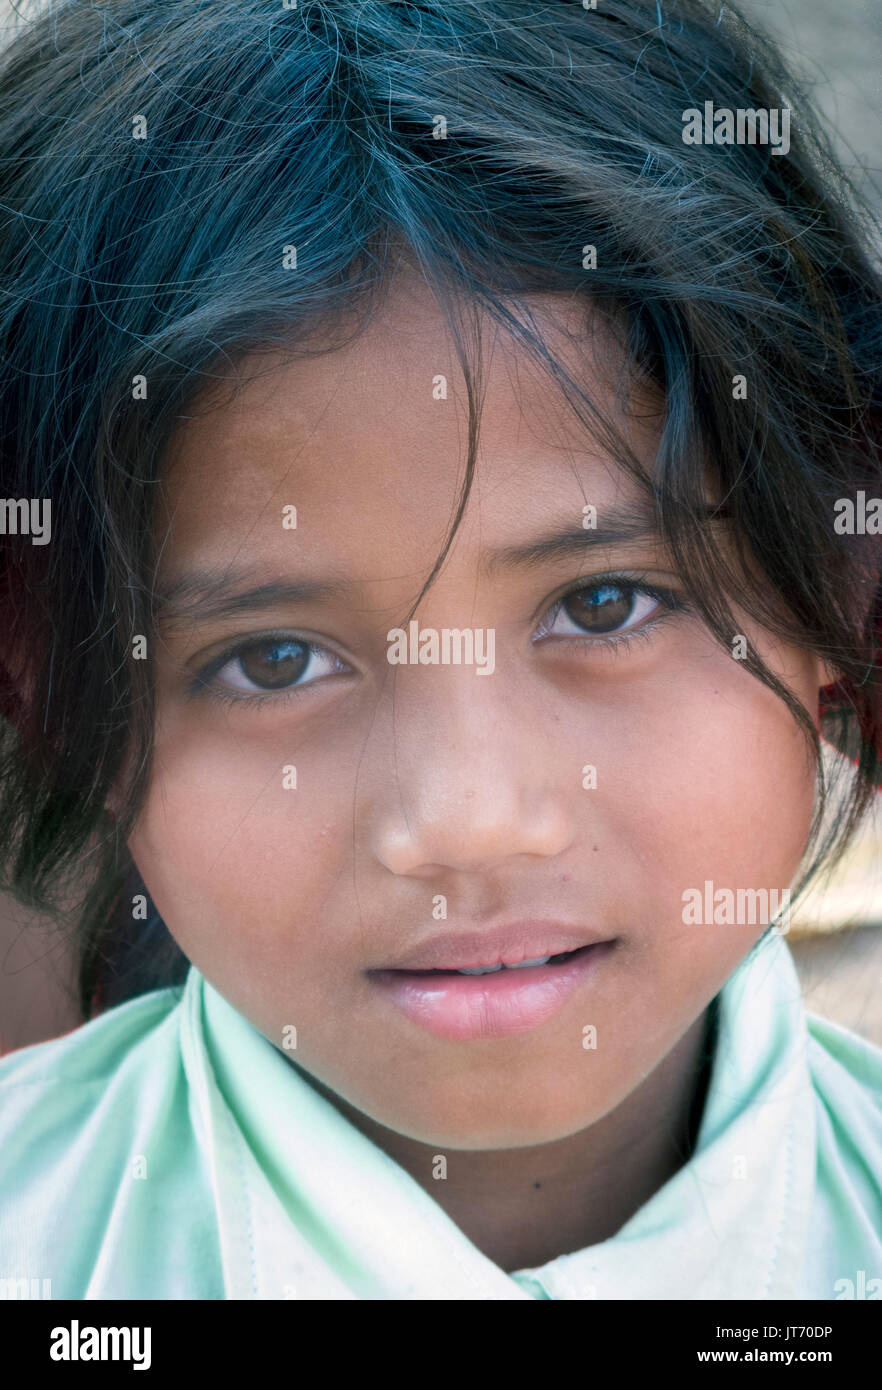 Ragazza giovane, serio, 10-12 anni, Cambogia Foto Stock